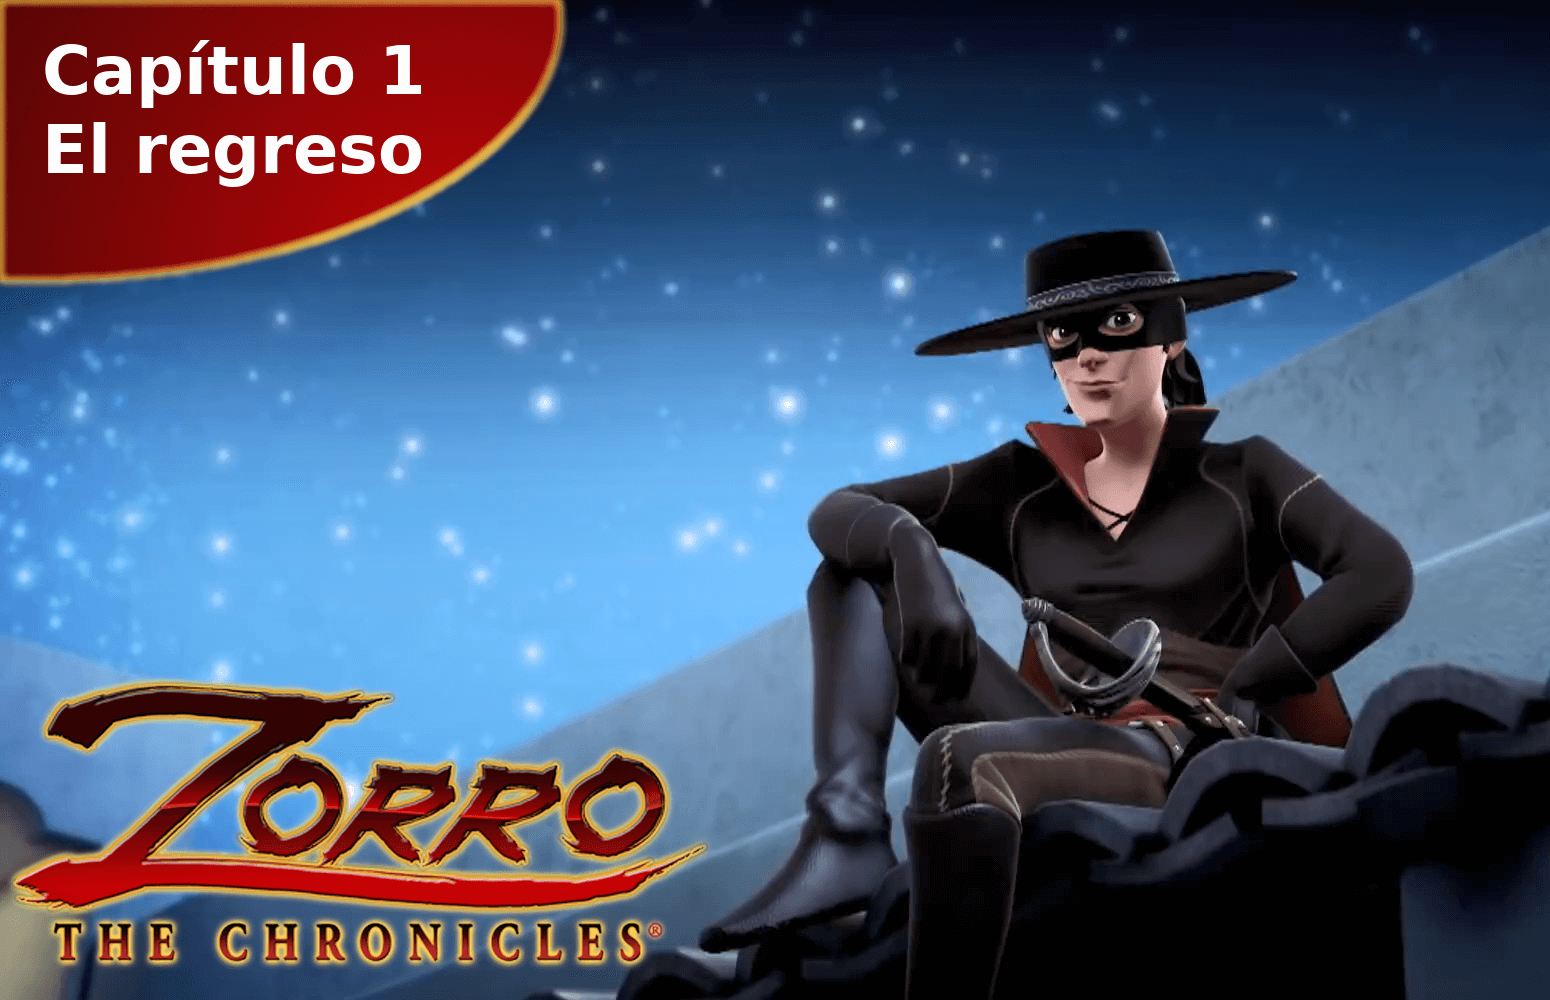 Las Crónicas del Zorro capítulo 1 El regreso